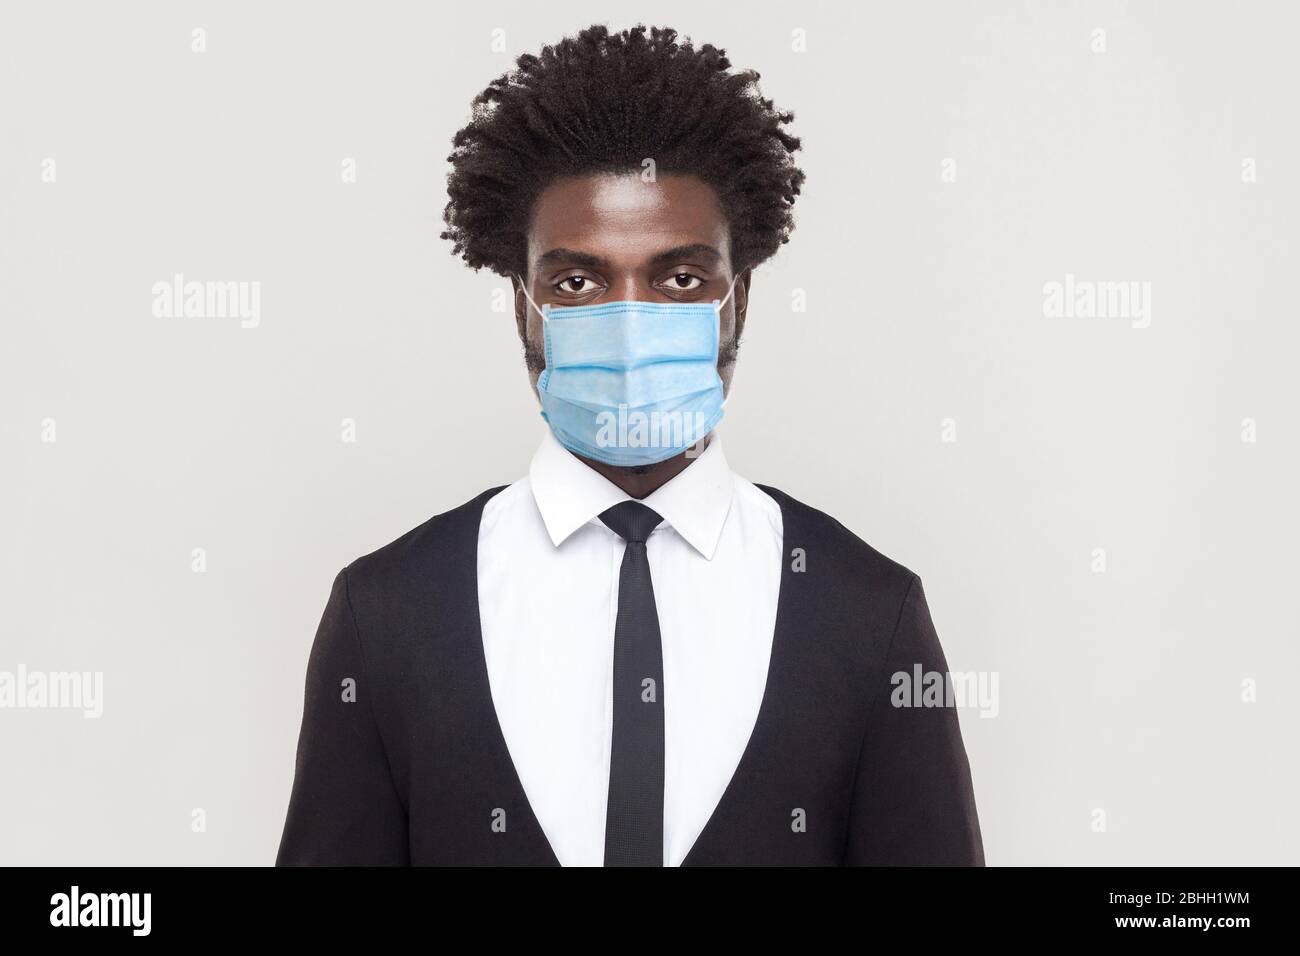 Protezione contro le malattie contagiose, coronavirus. Uomo che indossa la maschera igienica per prevenire le infezioni, le malattie respiratorie dell'aria come l'influenza, Covid-19 Foto Stock